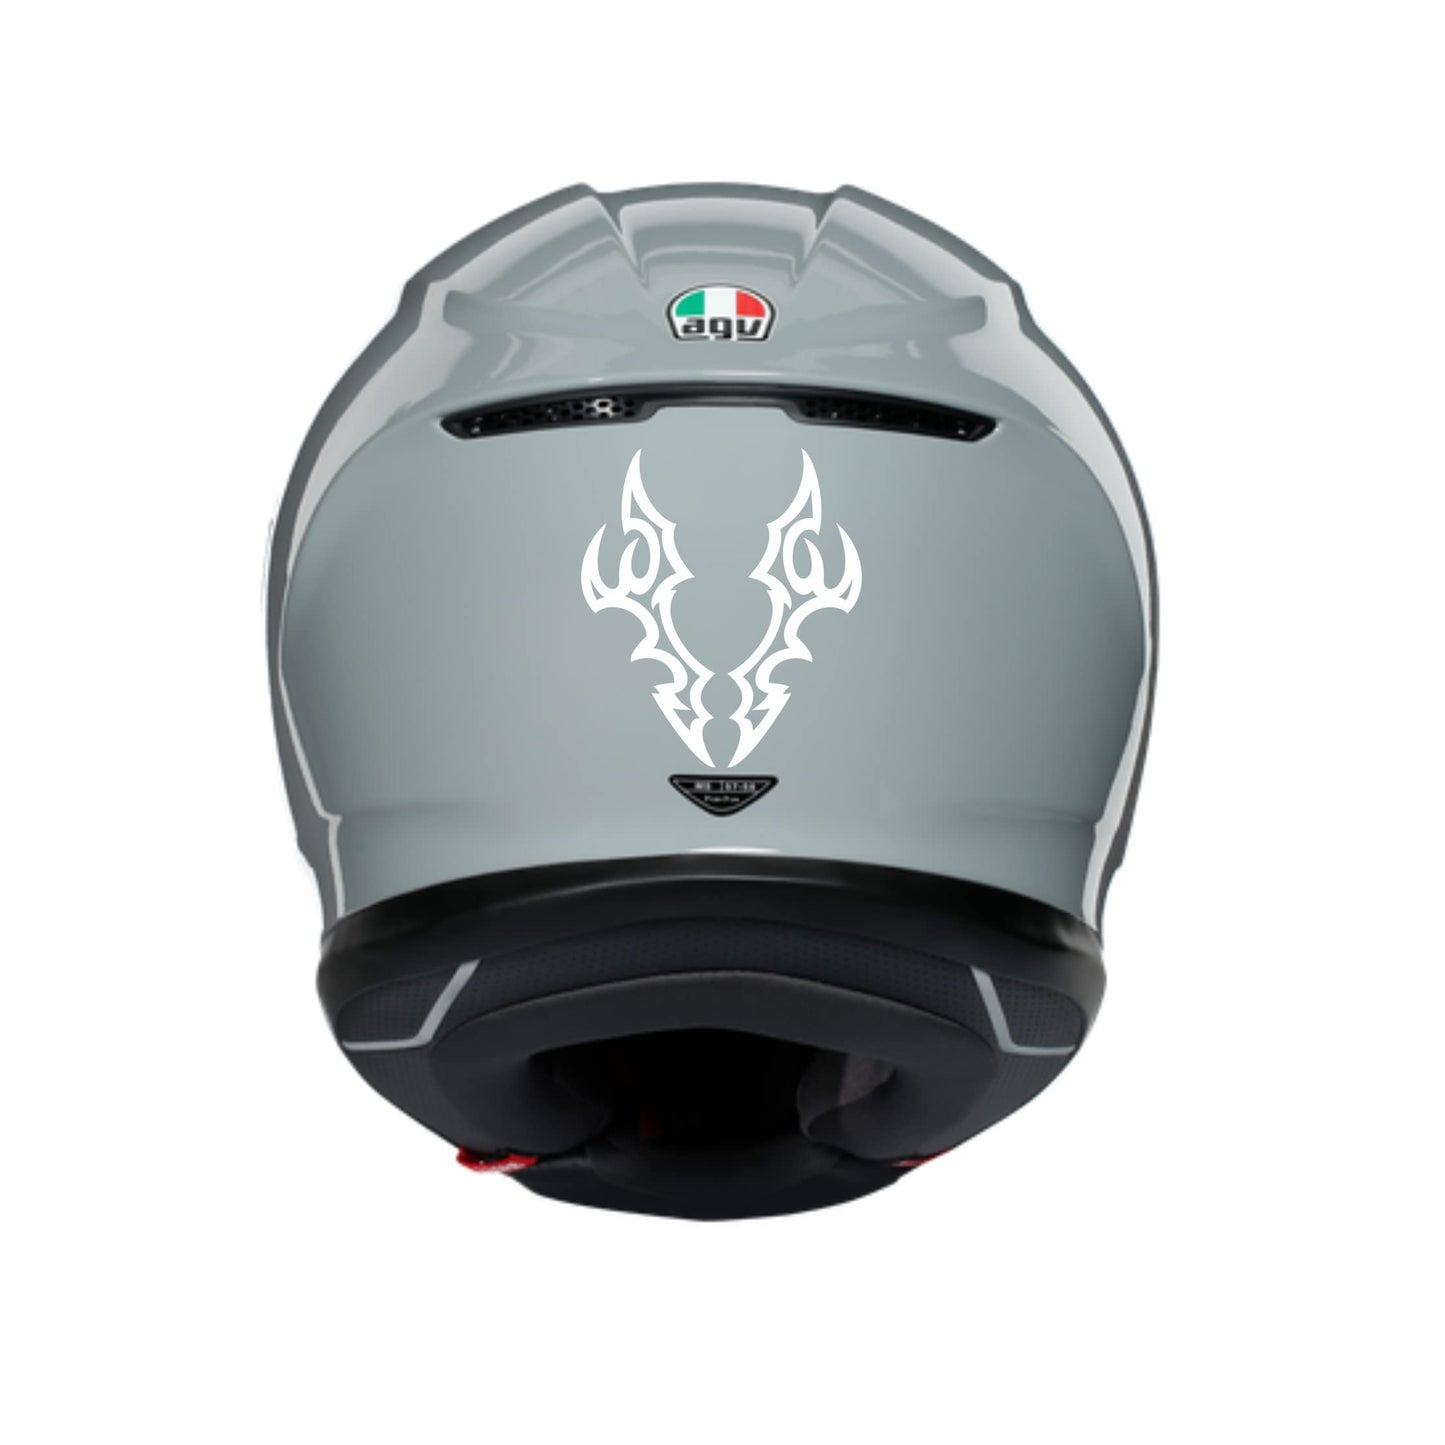 Adesivi TRIBALI CASCO ACCESSORI MOTO decorazione per scooter casco (1 PZ ) vinile colore a scelta COD.C0029 a €9.99 solo da DualColorStampe